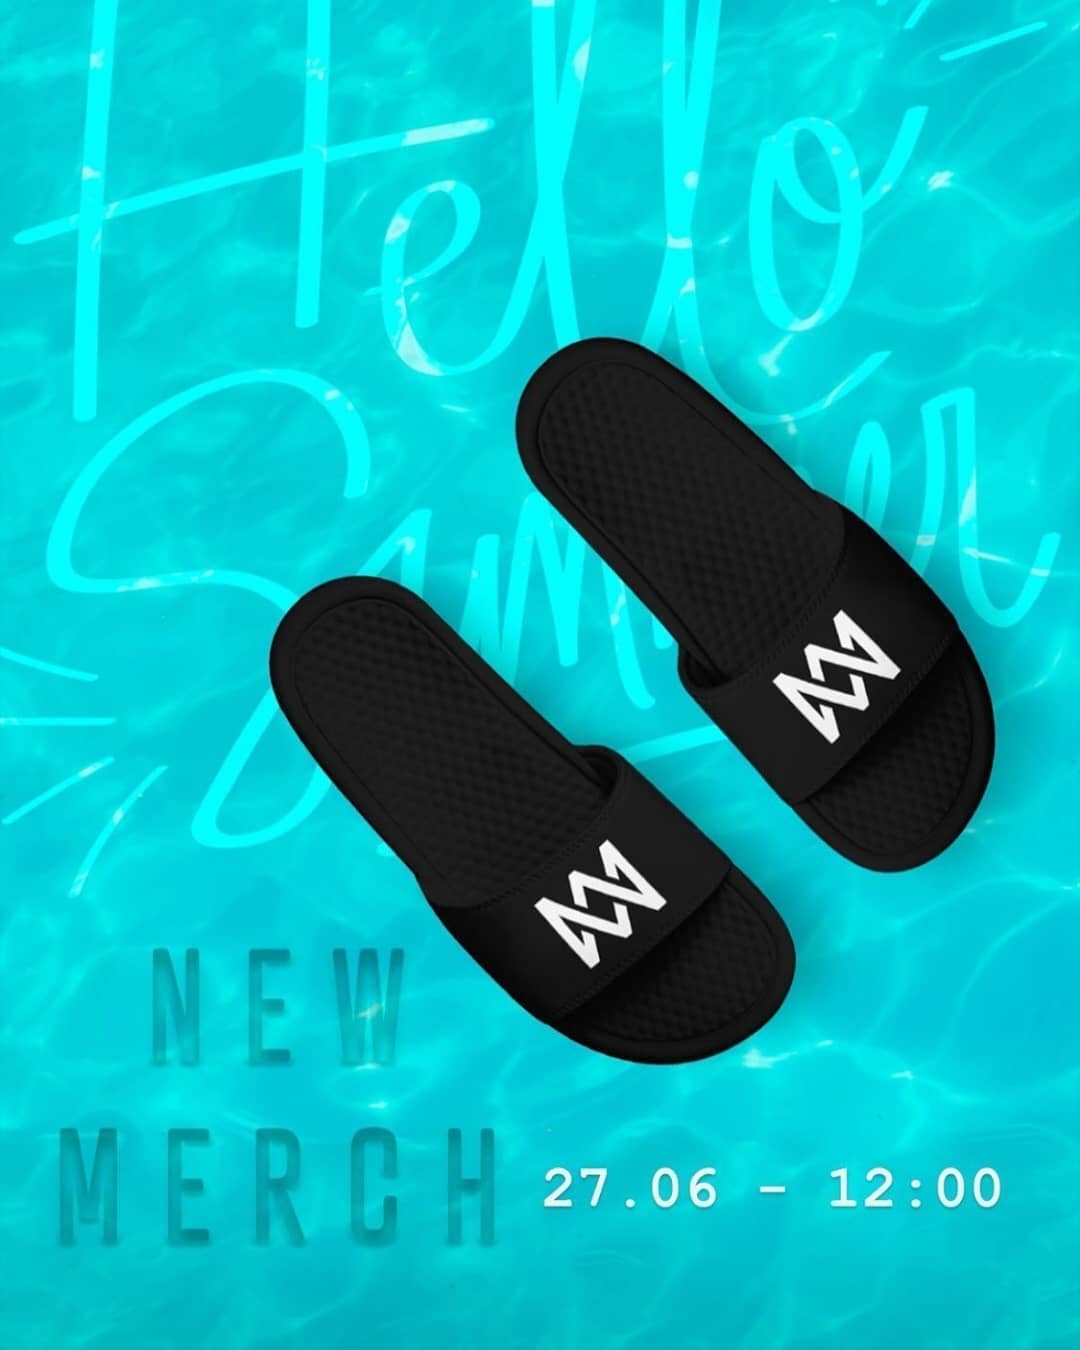 vergeven Het spijt me De lucht Marcus & Martinus on Twitter: "New merch is coming 🔥🌴 Be ready 27.06 -  12:00! #marcusandmartinus https://t.co/BFbGfoPFYY" / Twitter